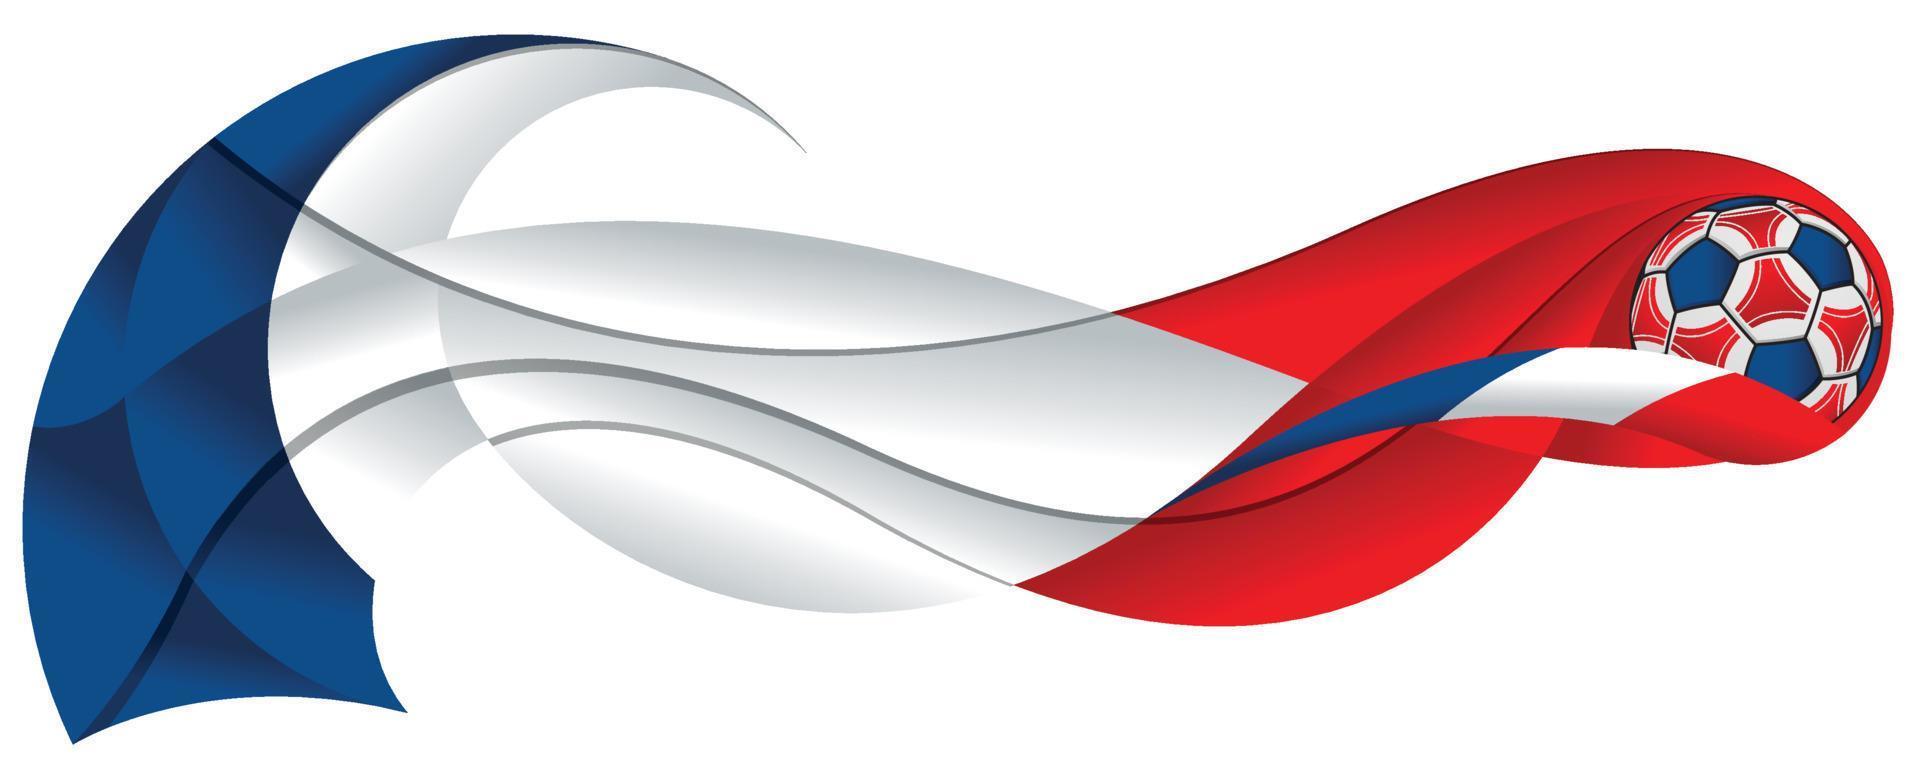 Rot-weißer und blauer Fußball, der eine abstrakte Spur in Form einer Welle mit den Farben der französischen Flagge auf weißem Hintergrund hinterlässt vektor